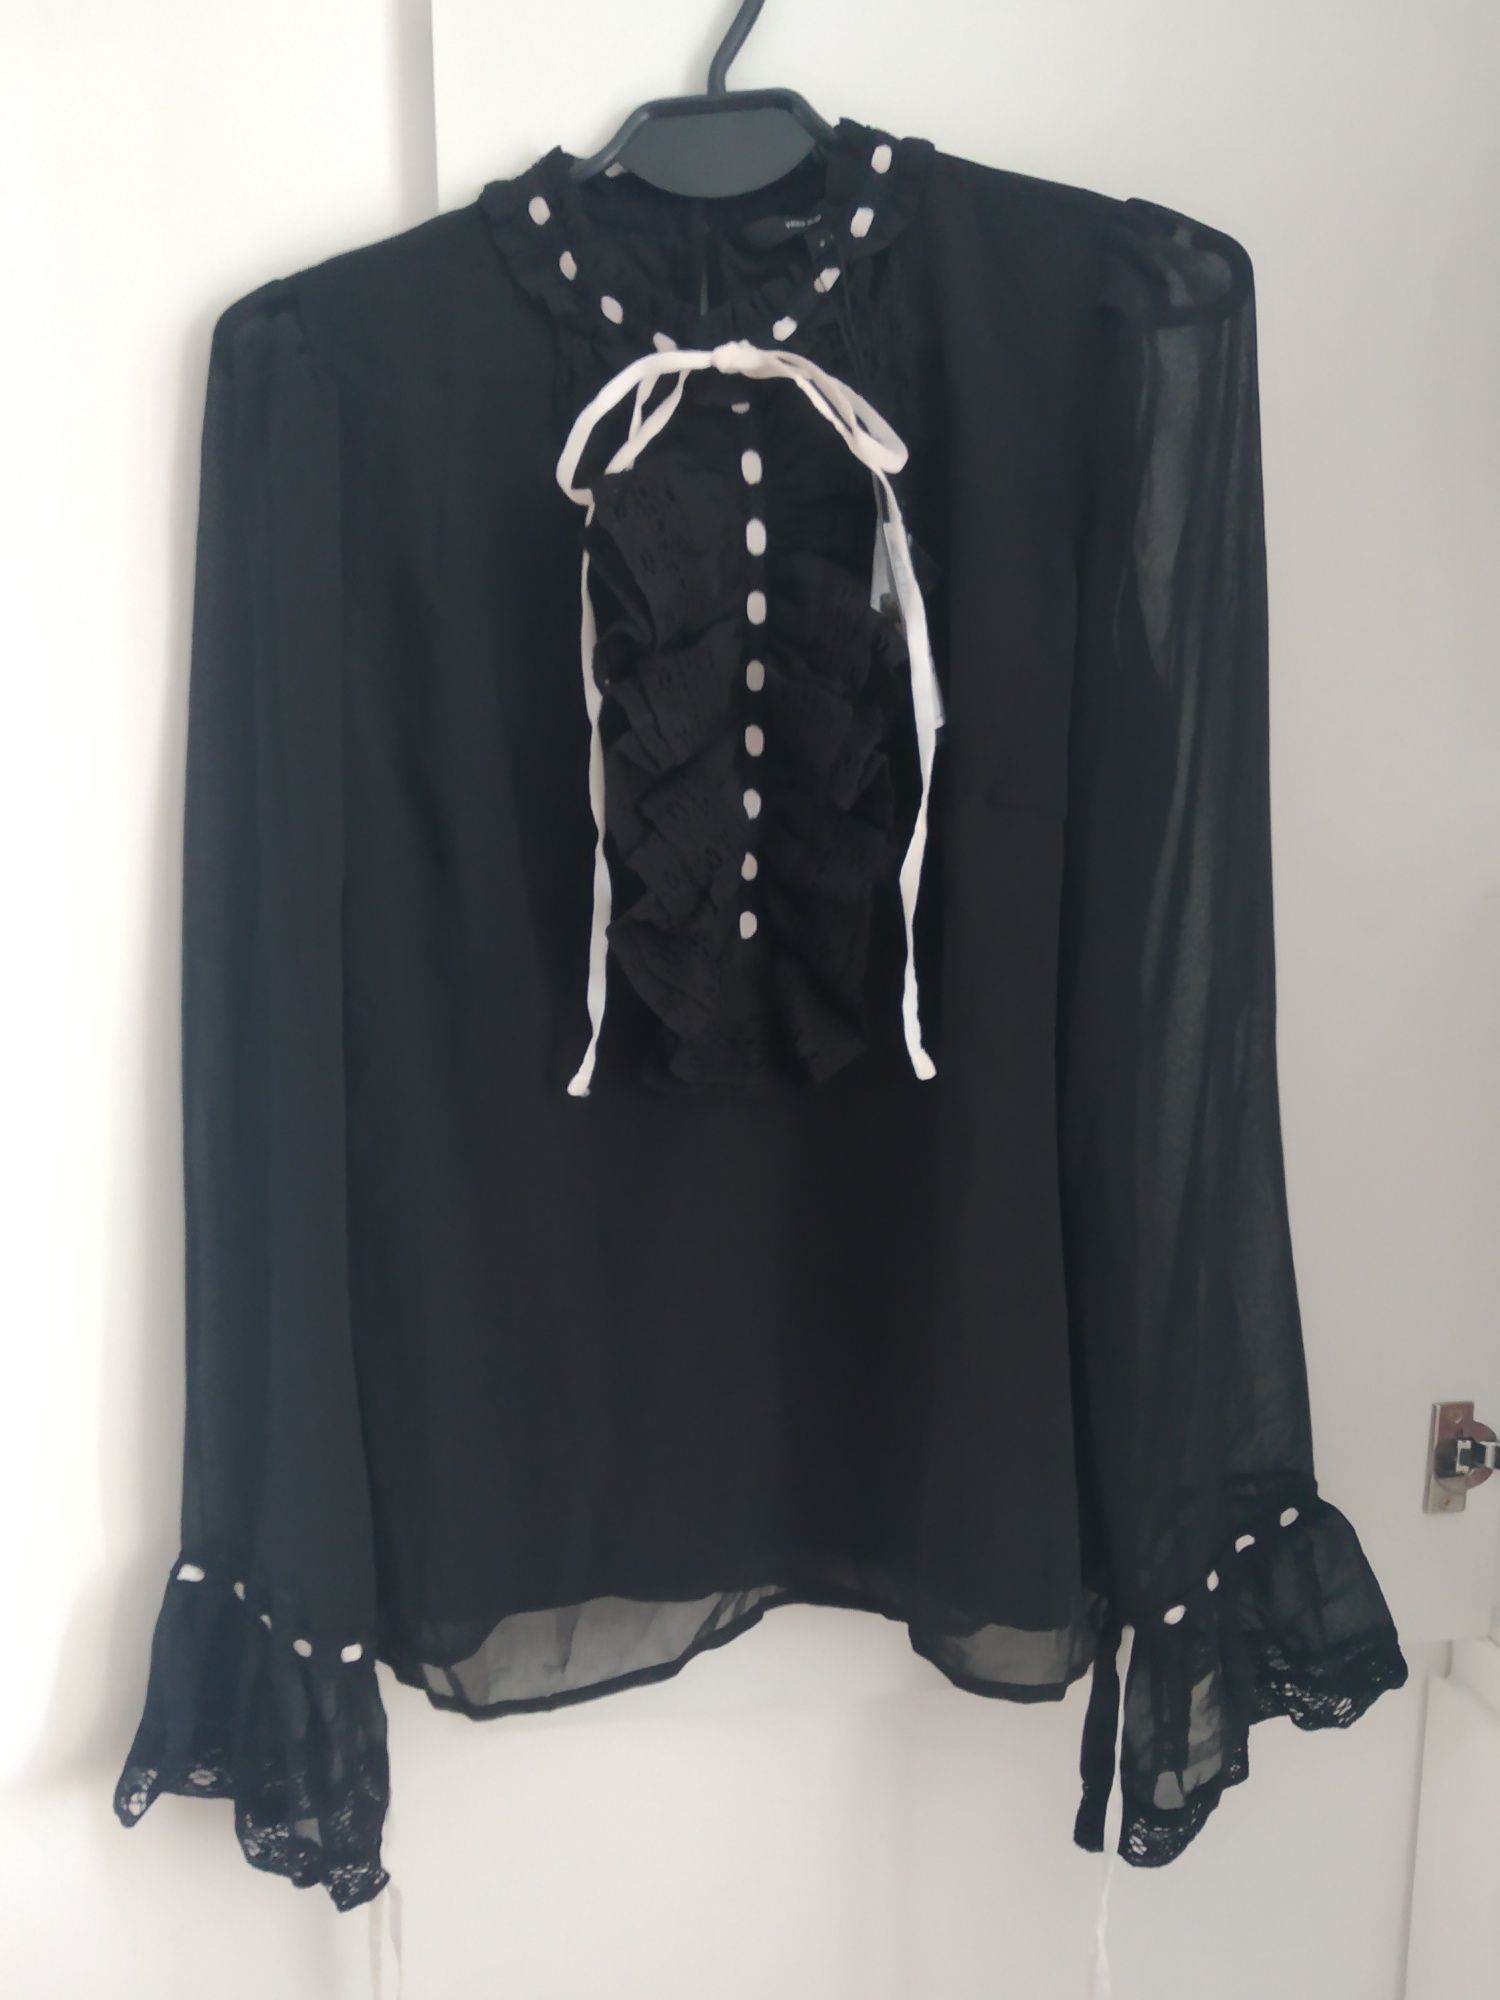 Bluzka czarna elegancka wiązana pod szyją Vero moda rozmiar S